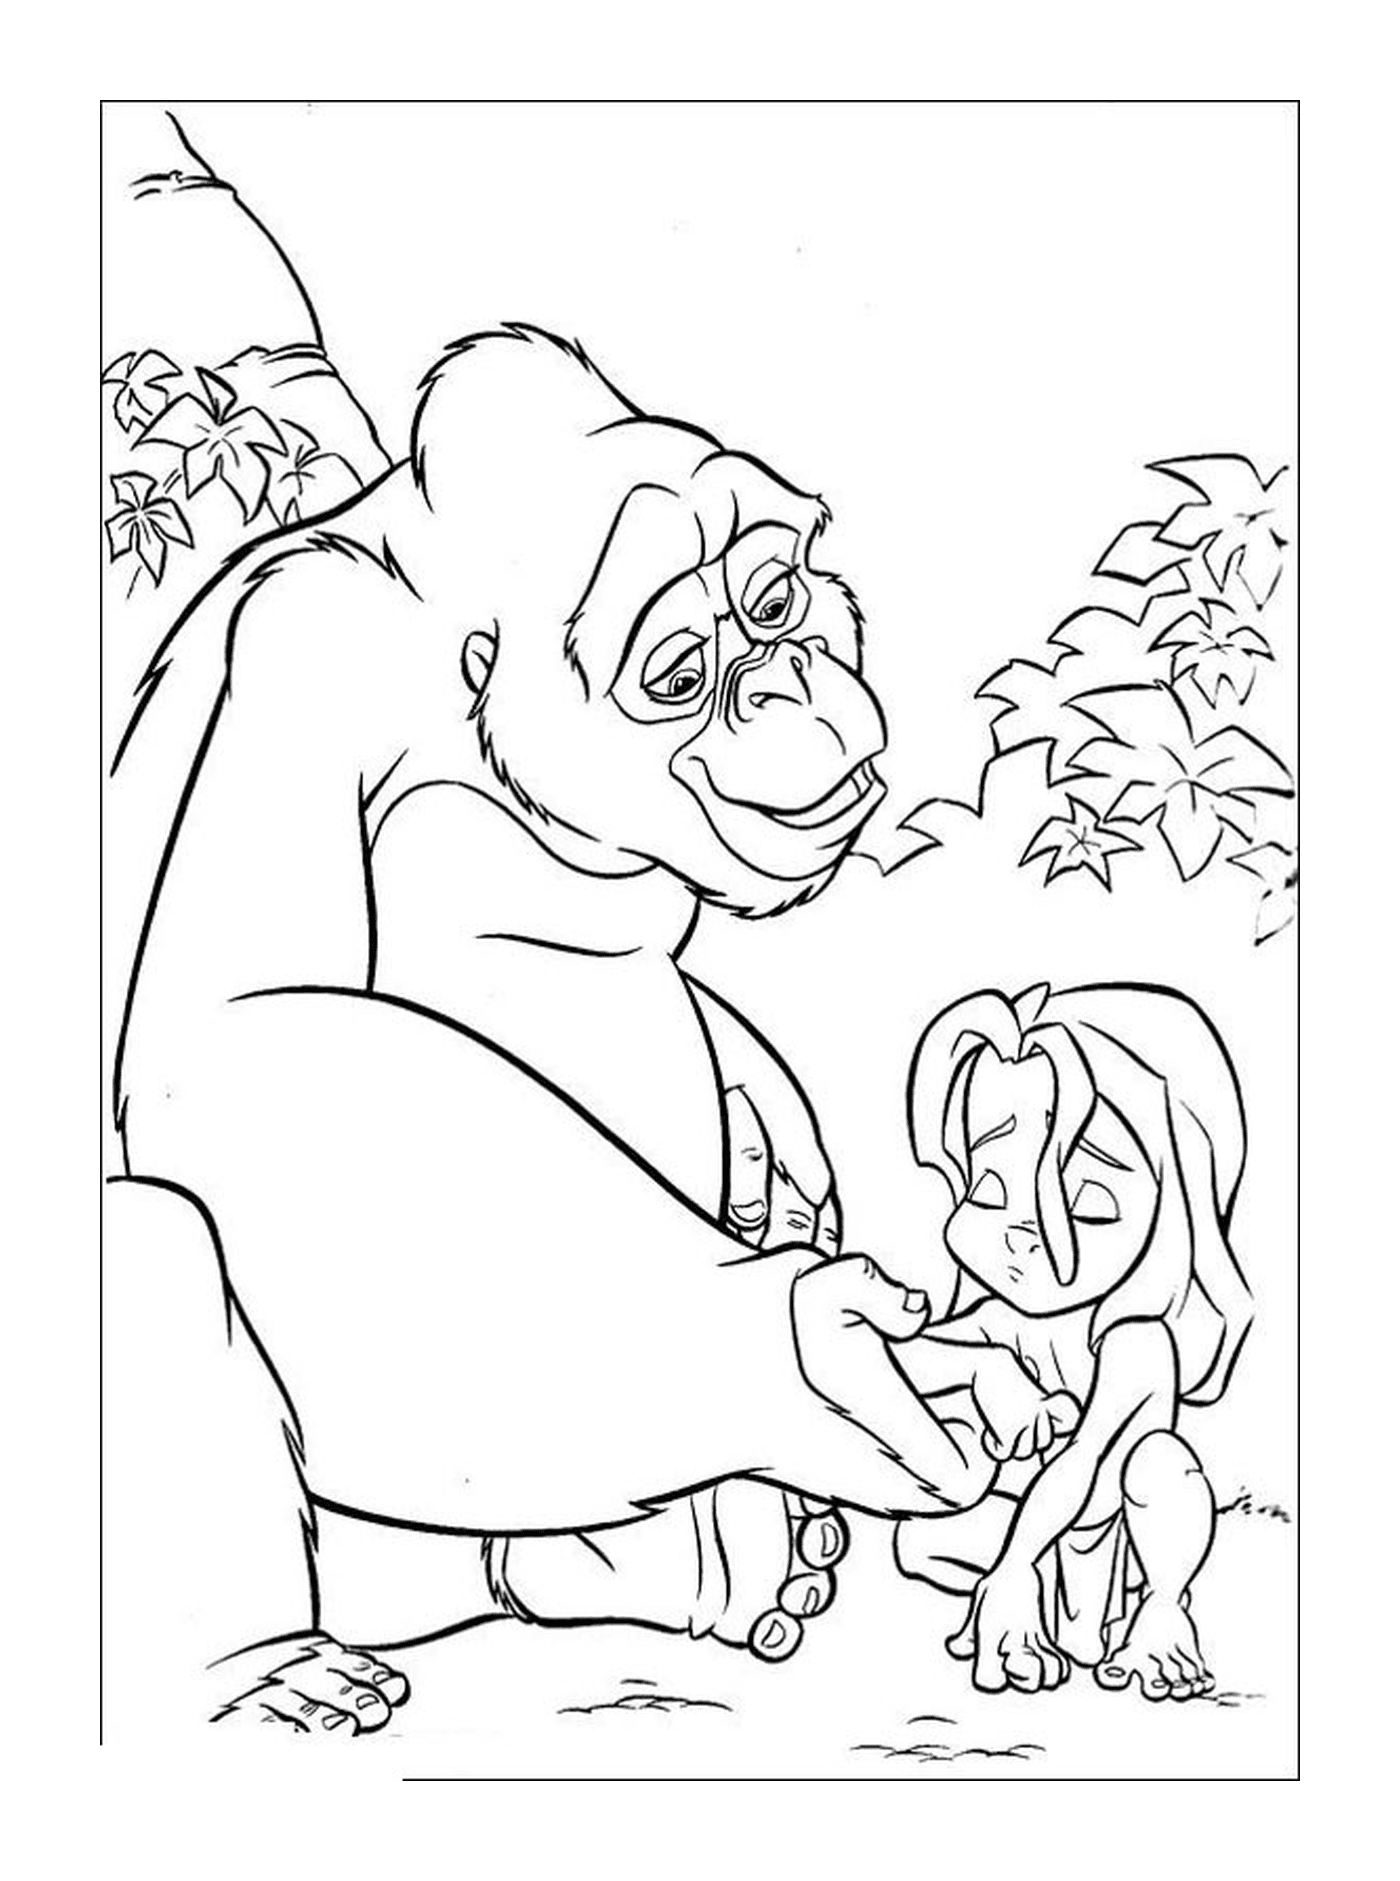  Gorila sosteniendo a una chica en sus brazos 